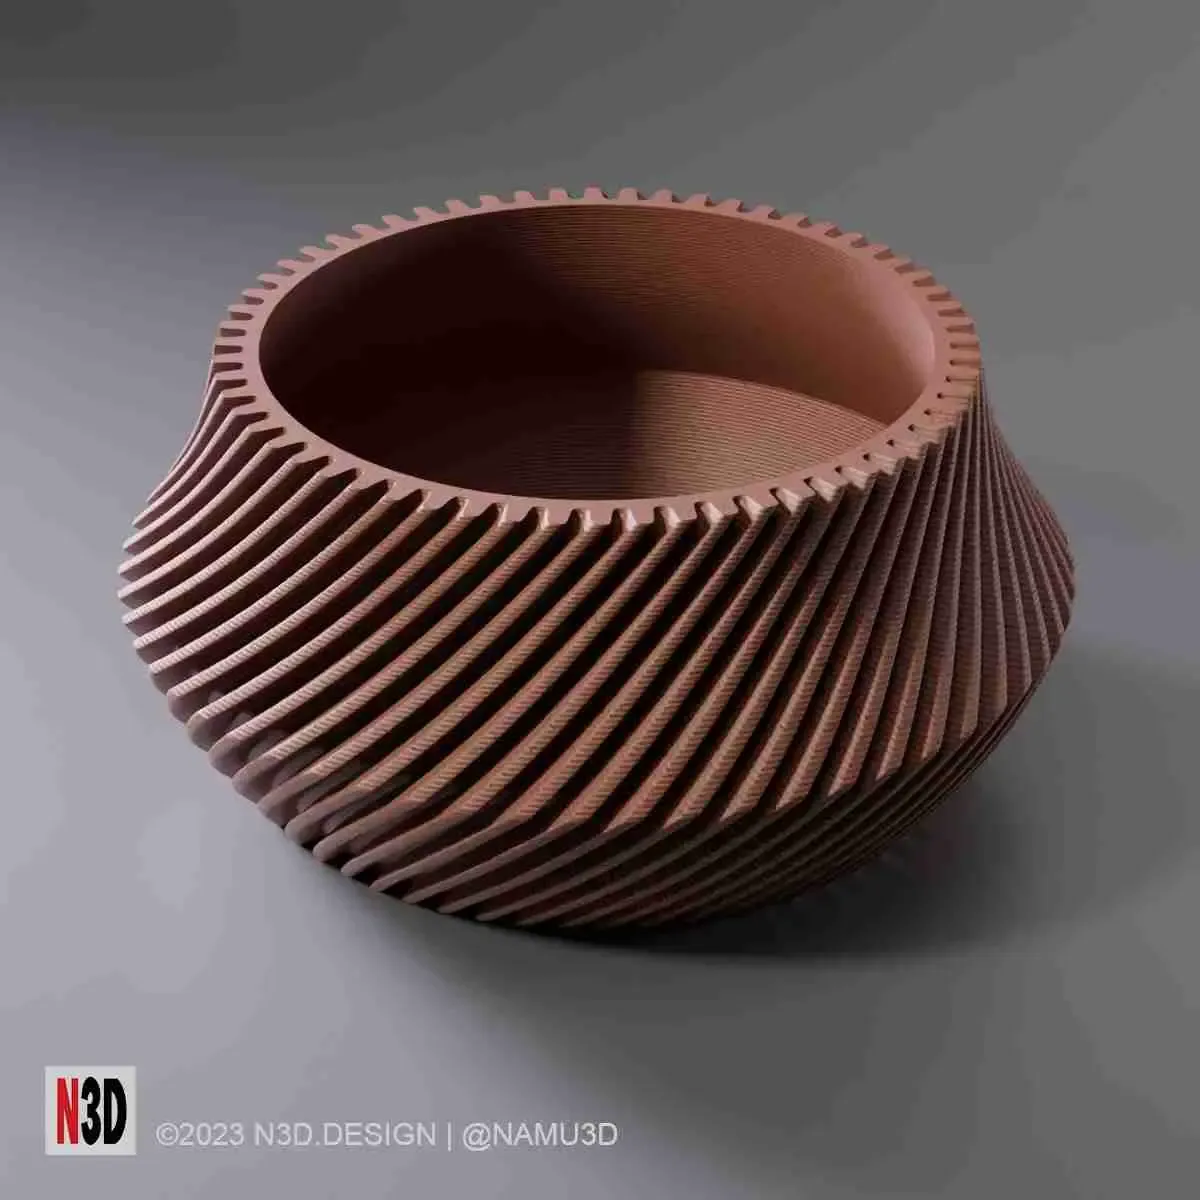 Vase 0013 B Twisted bowl vase